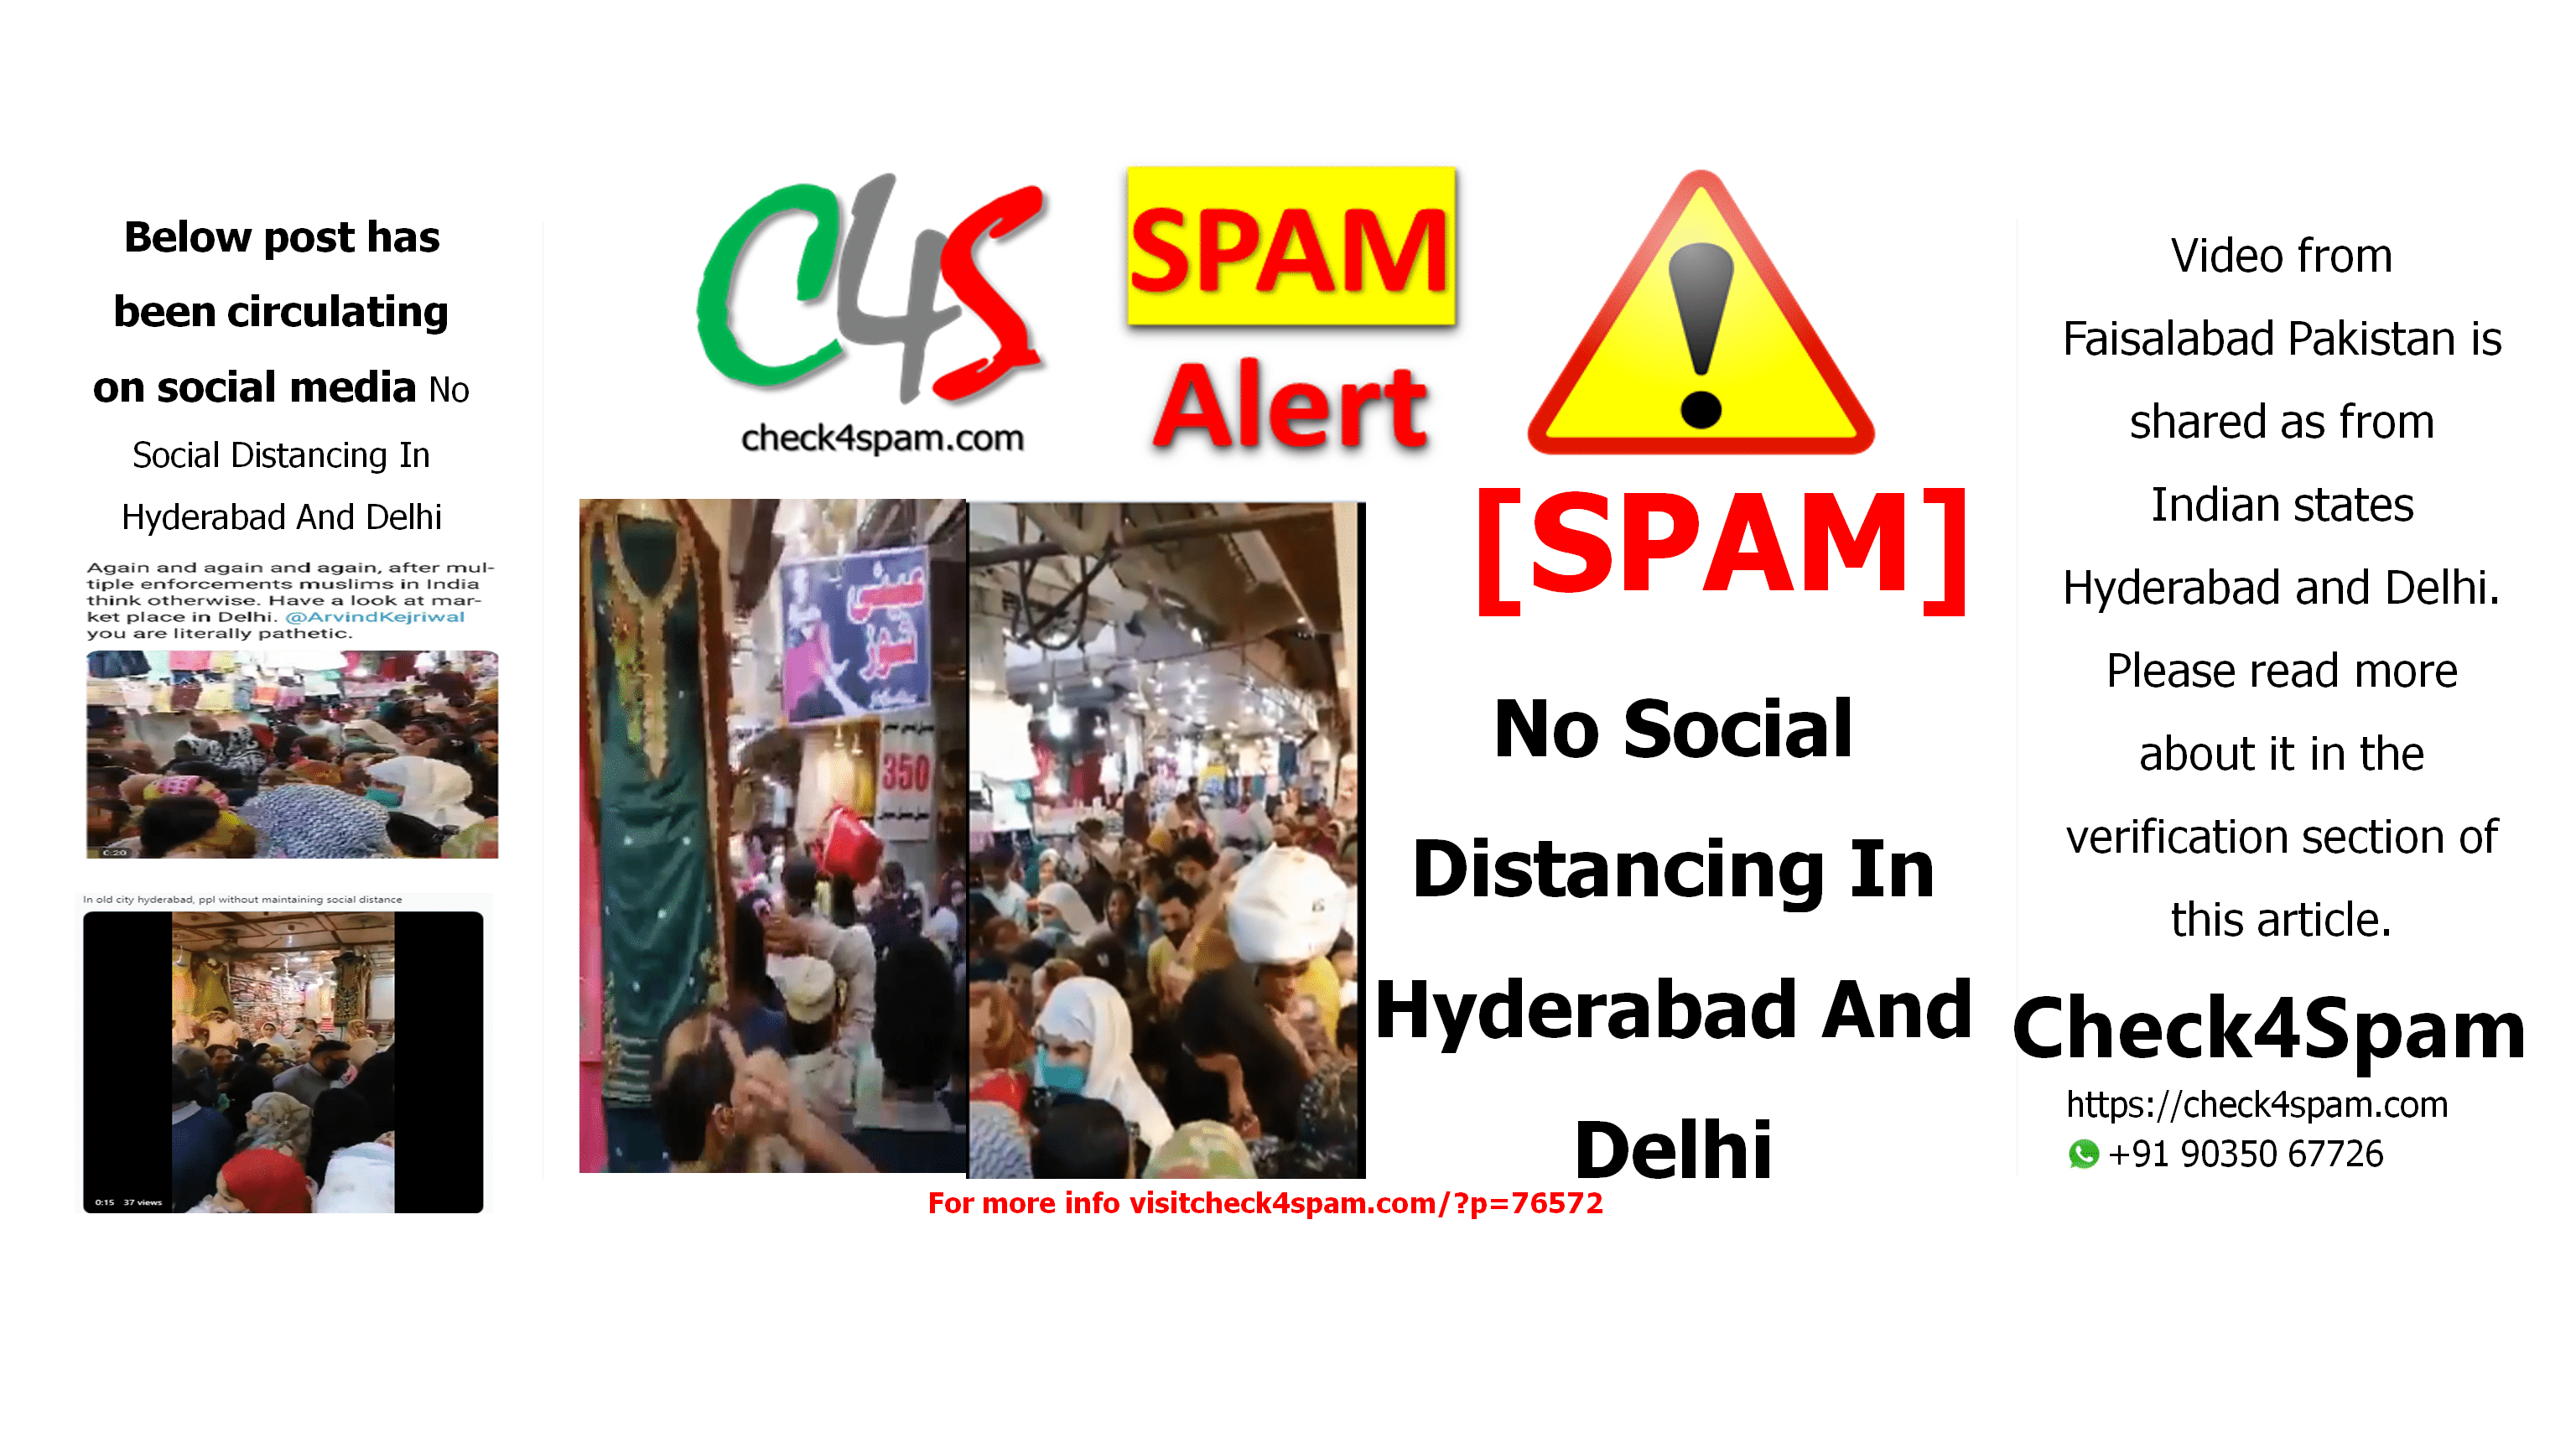 No Social Distancing In Hyderabad And Delhi